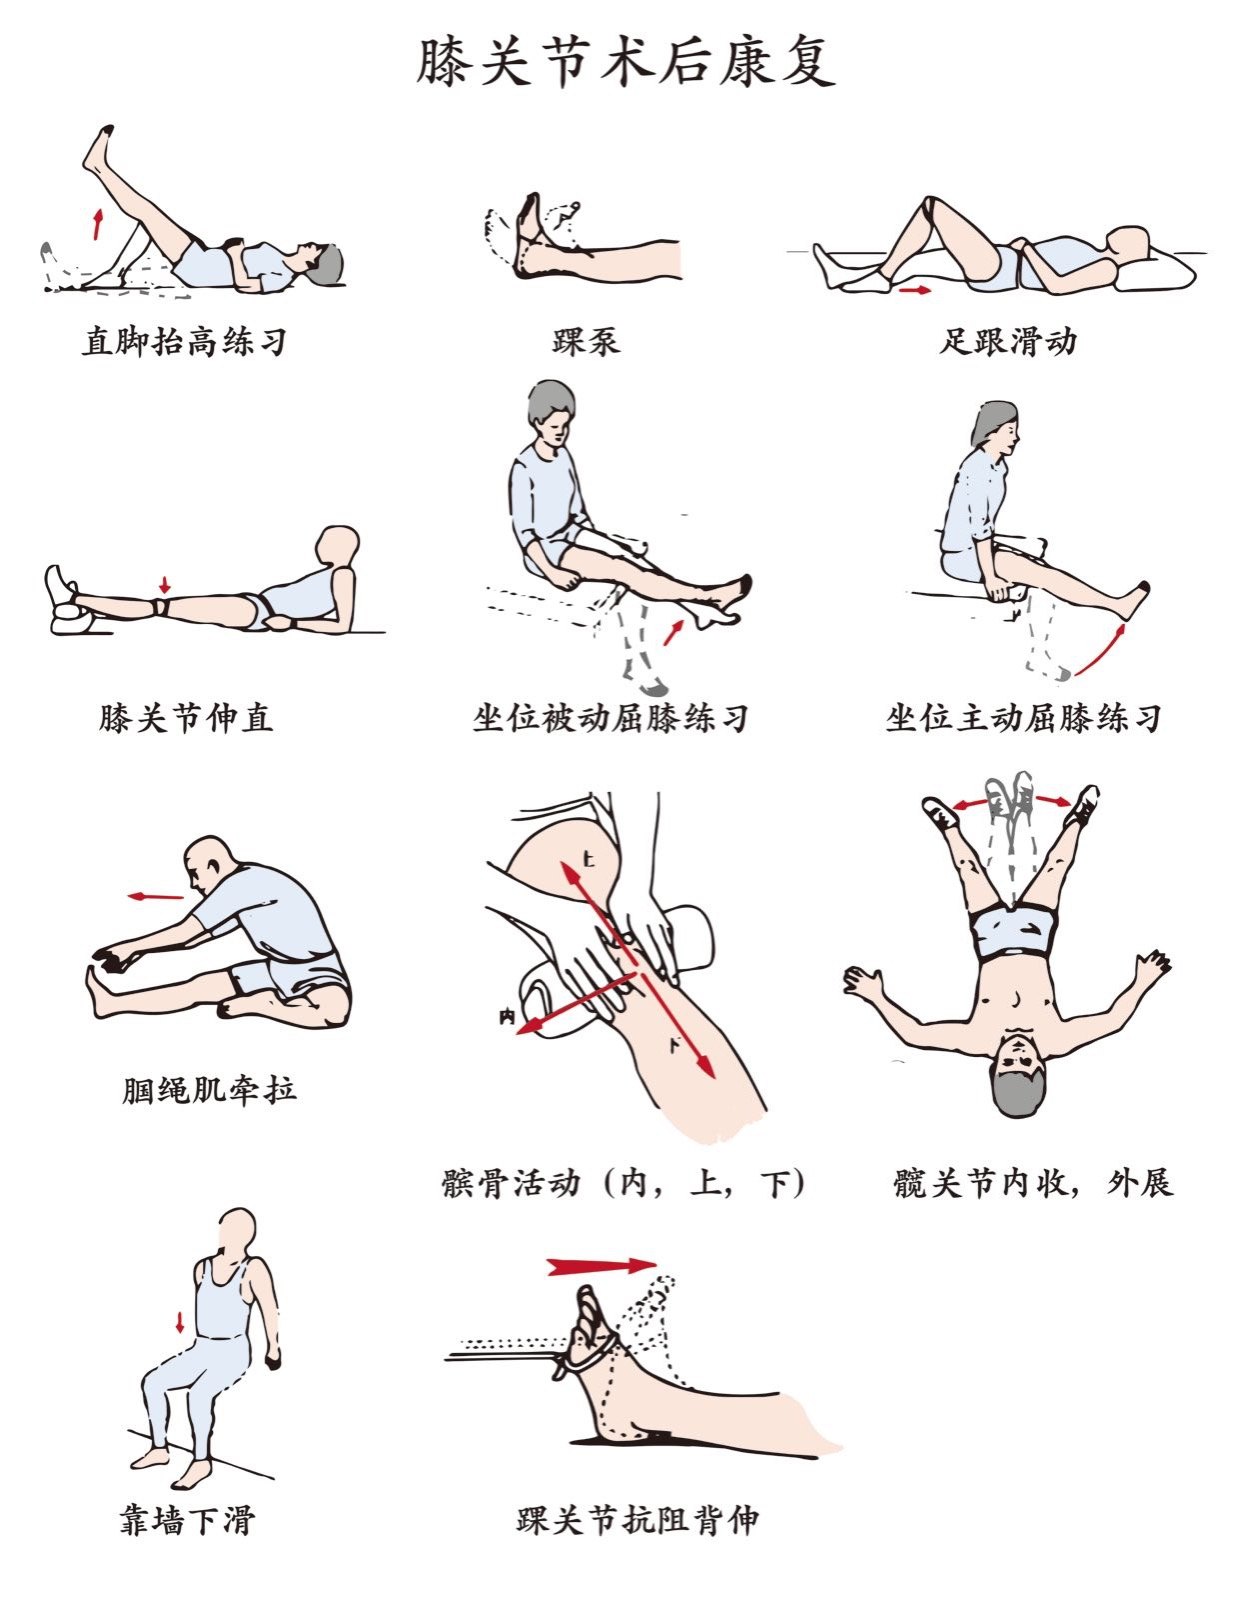 膝关节术后康复锻炼示意图(手绘版) 